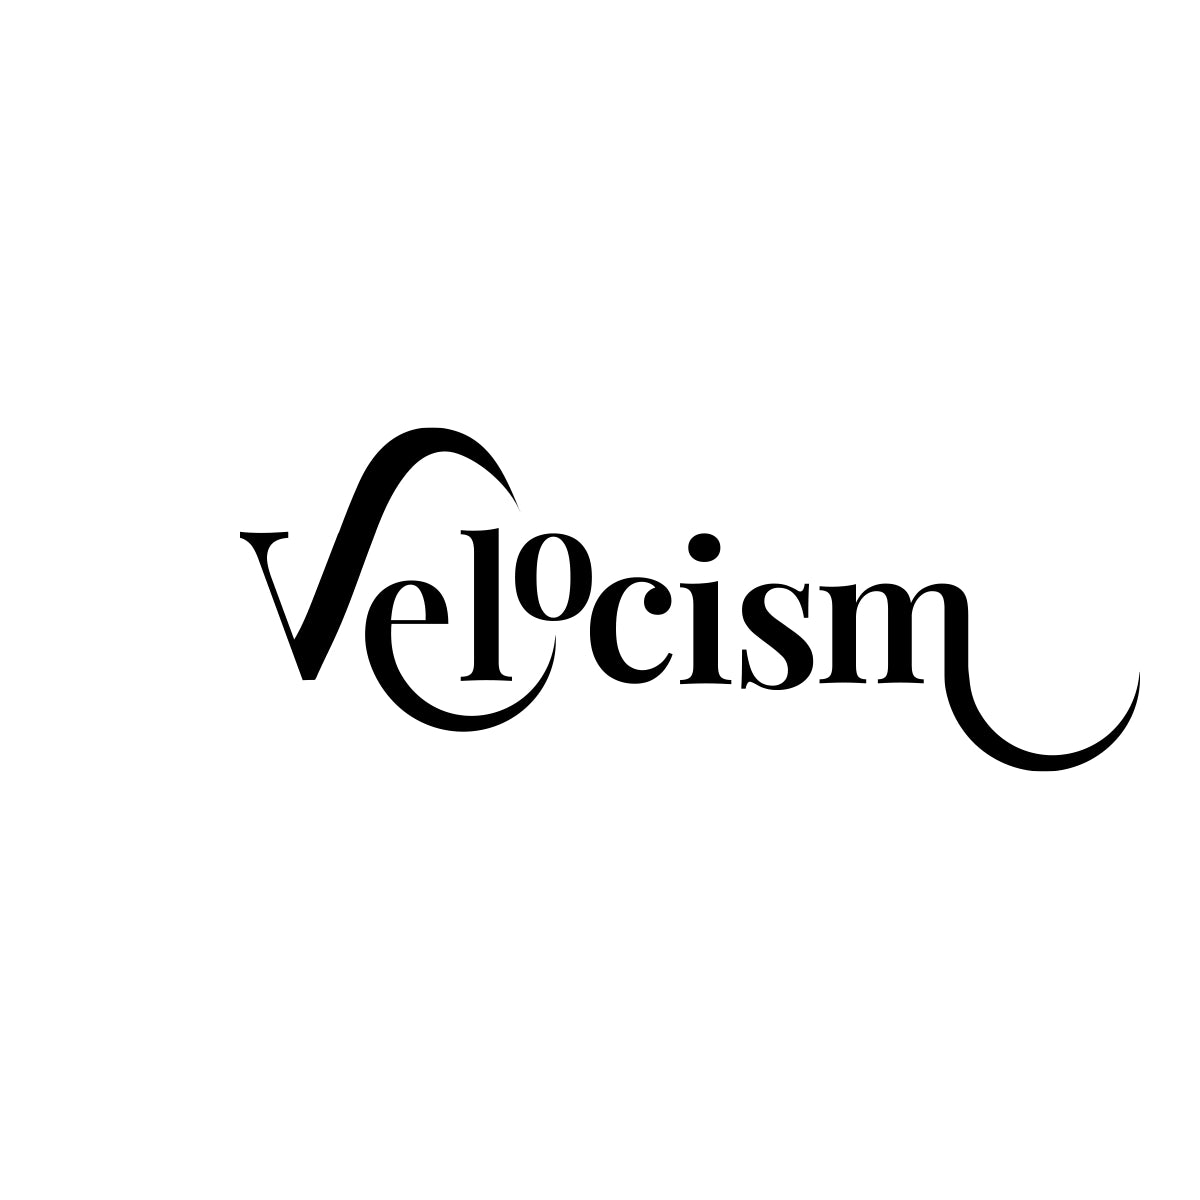 Velocism.com